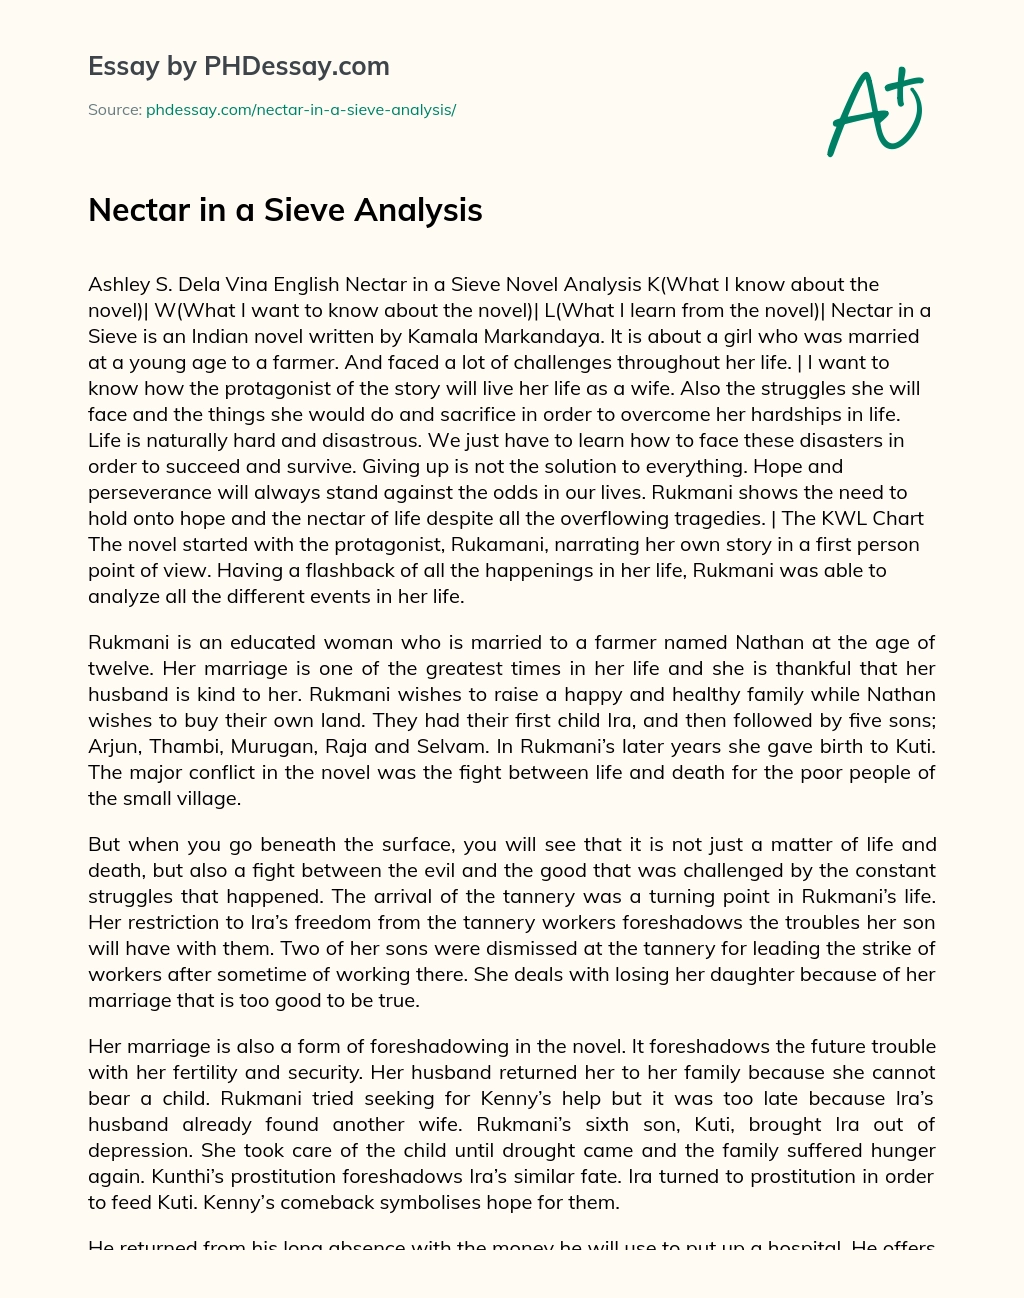 Nectar in a Sieve Analysis essay